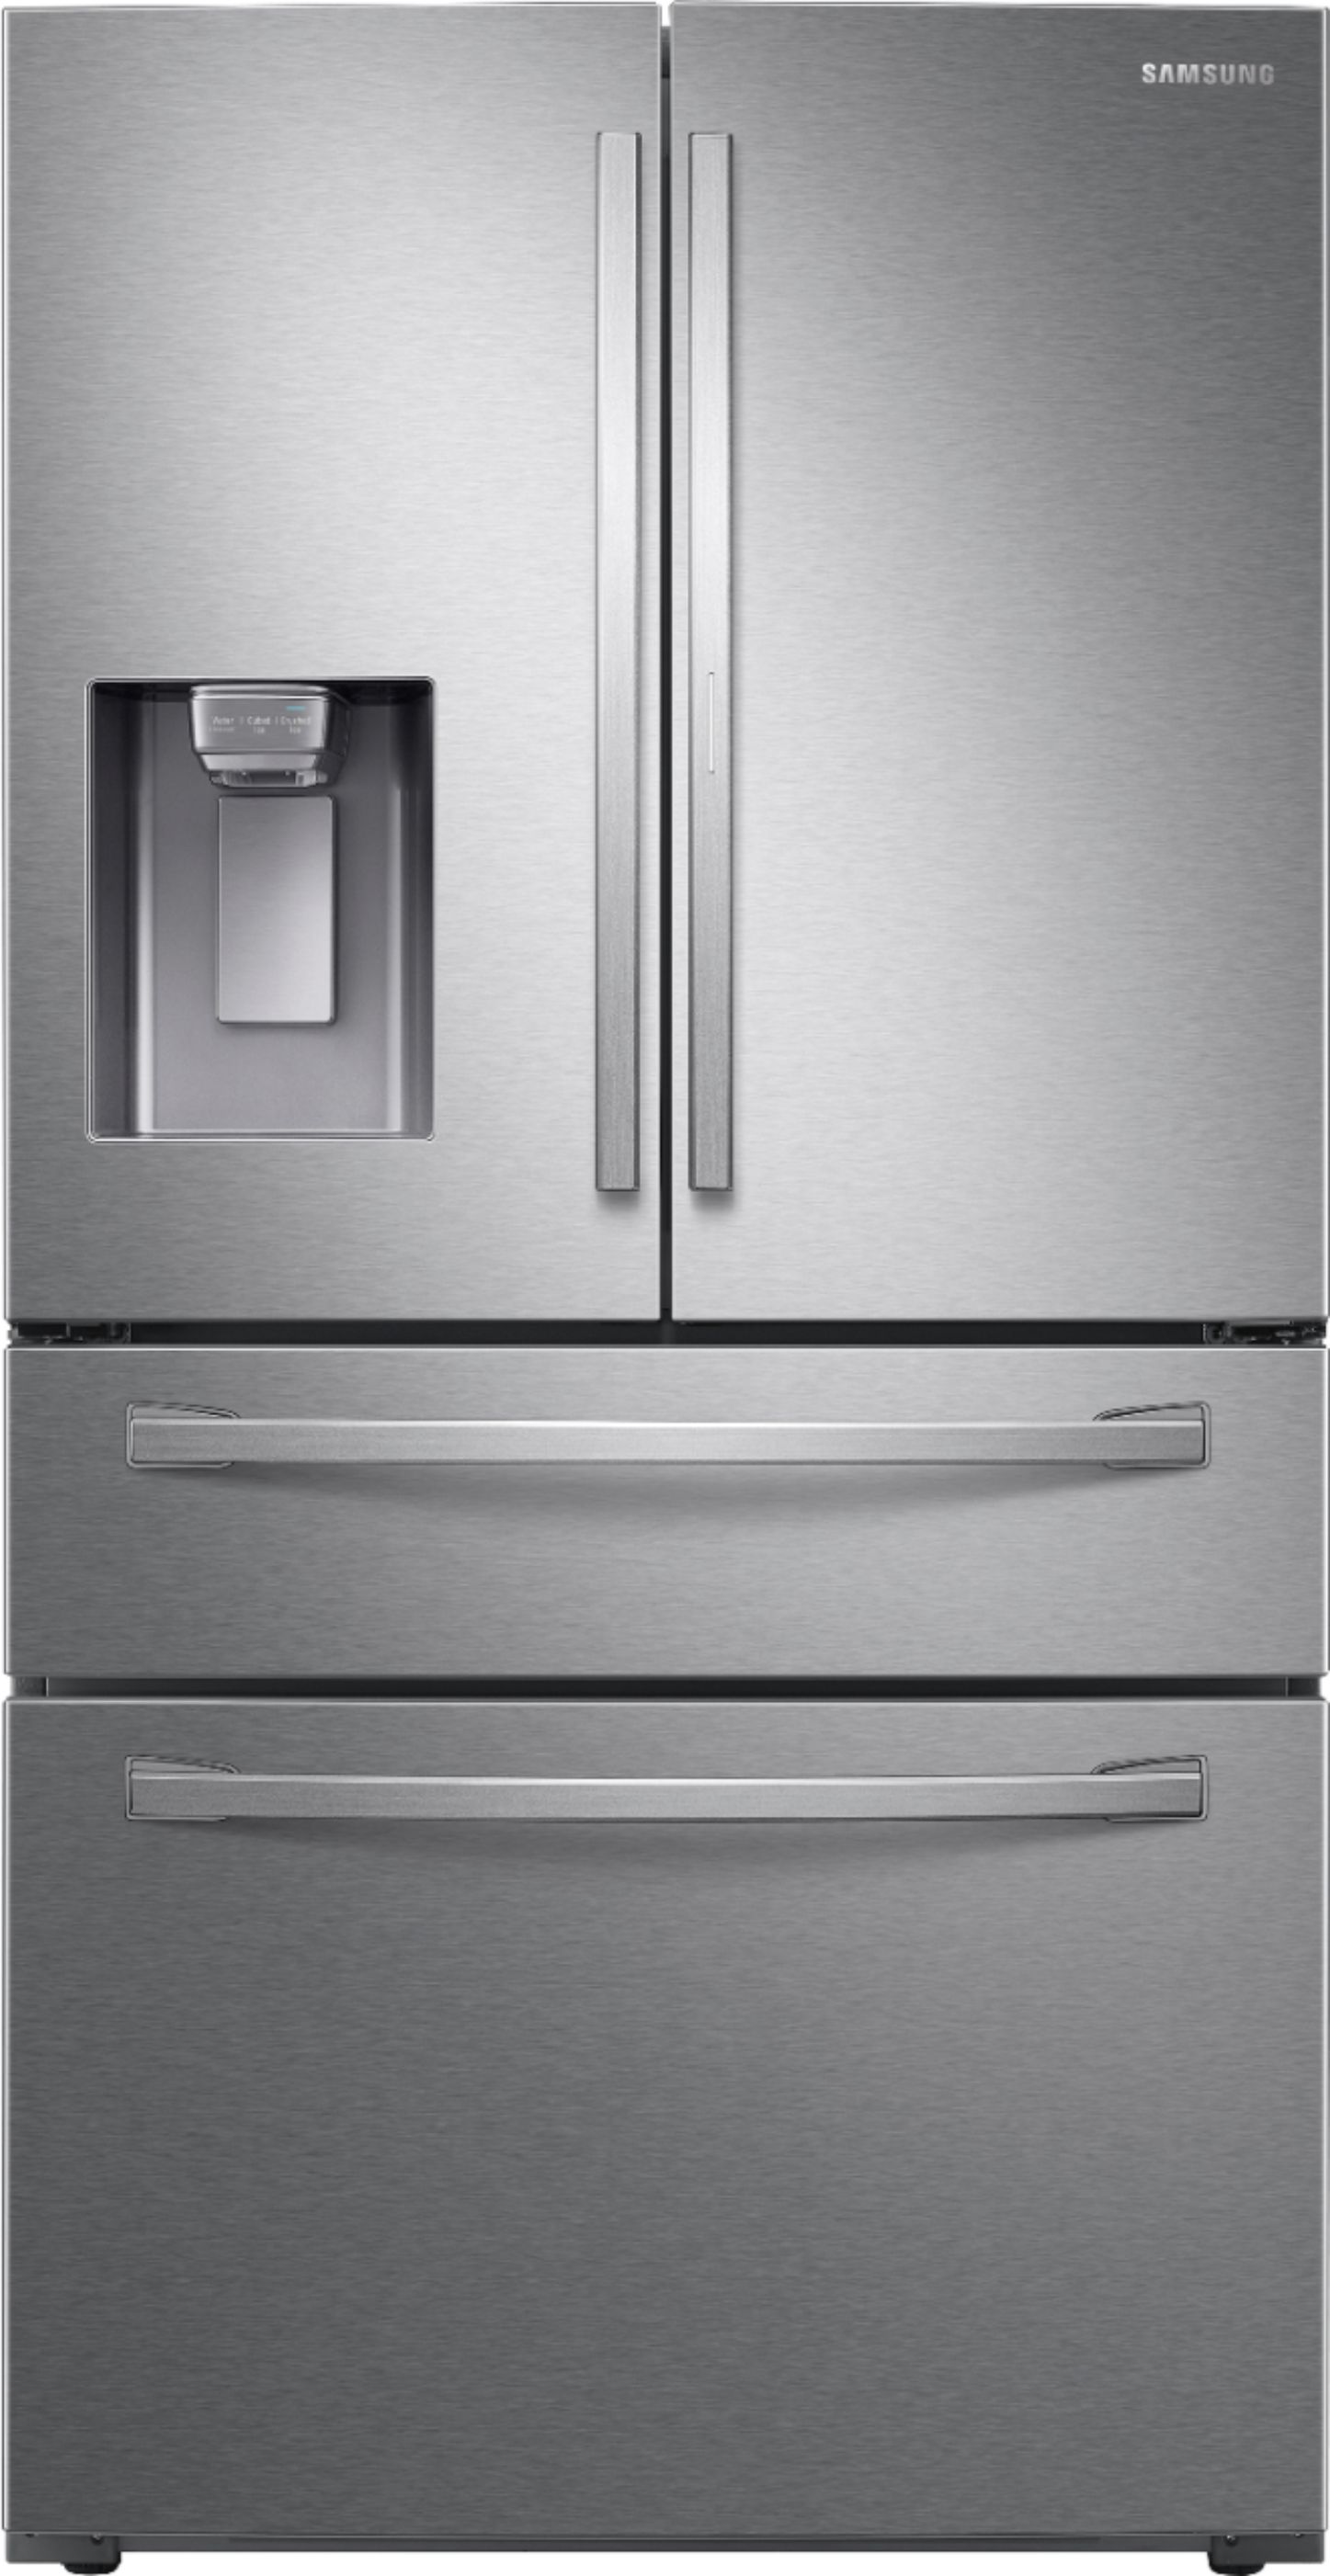 Réfrigérateur Samsung No Frost 420 litres RT42K5152S8 